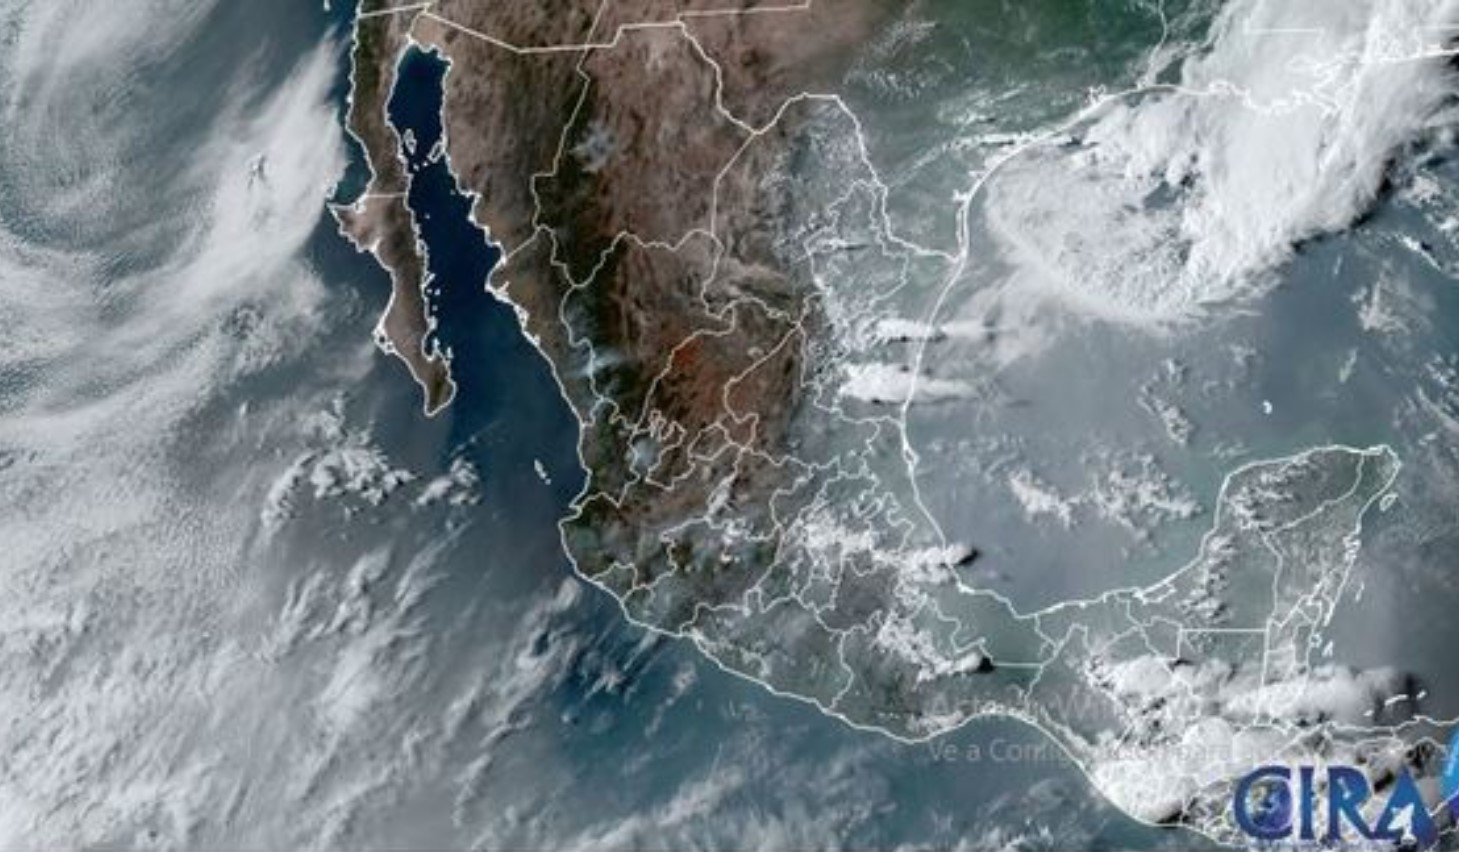 Terminará abril con lluvias muy fuertes en Chiapas, ¡checa el clima!